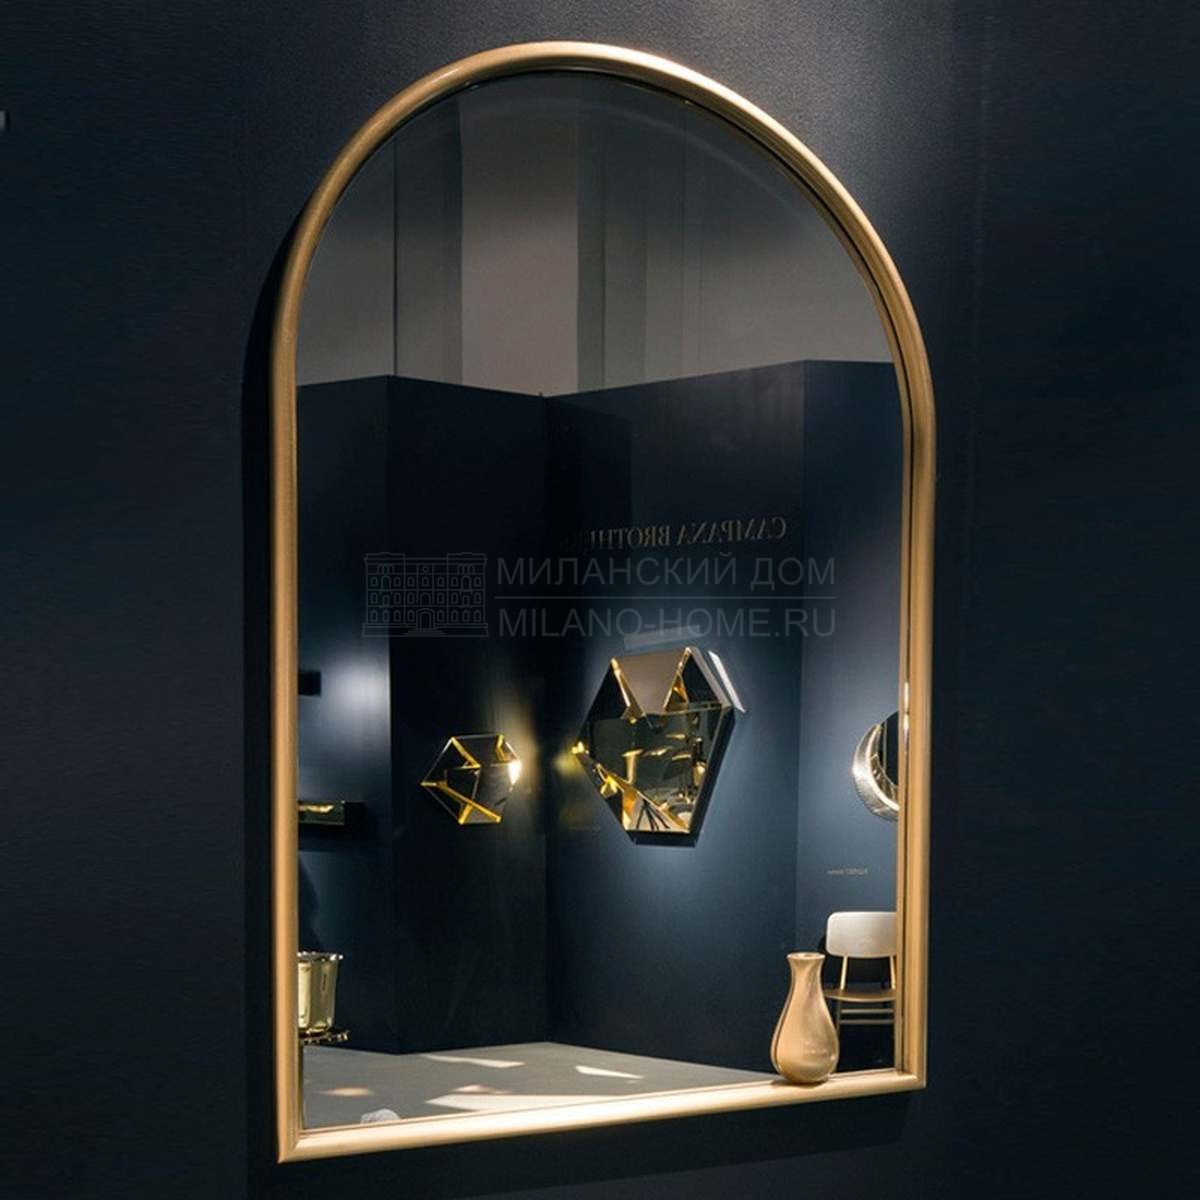 Зеркало настенное Portrait with little vase mirror из Италии фабрики GHIDINI 1961